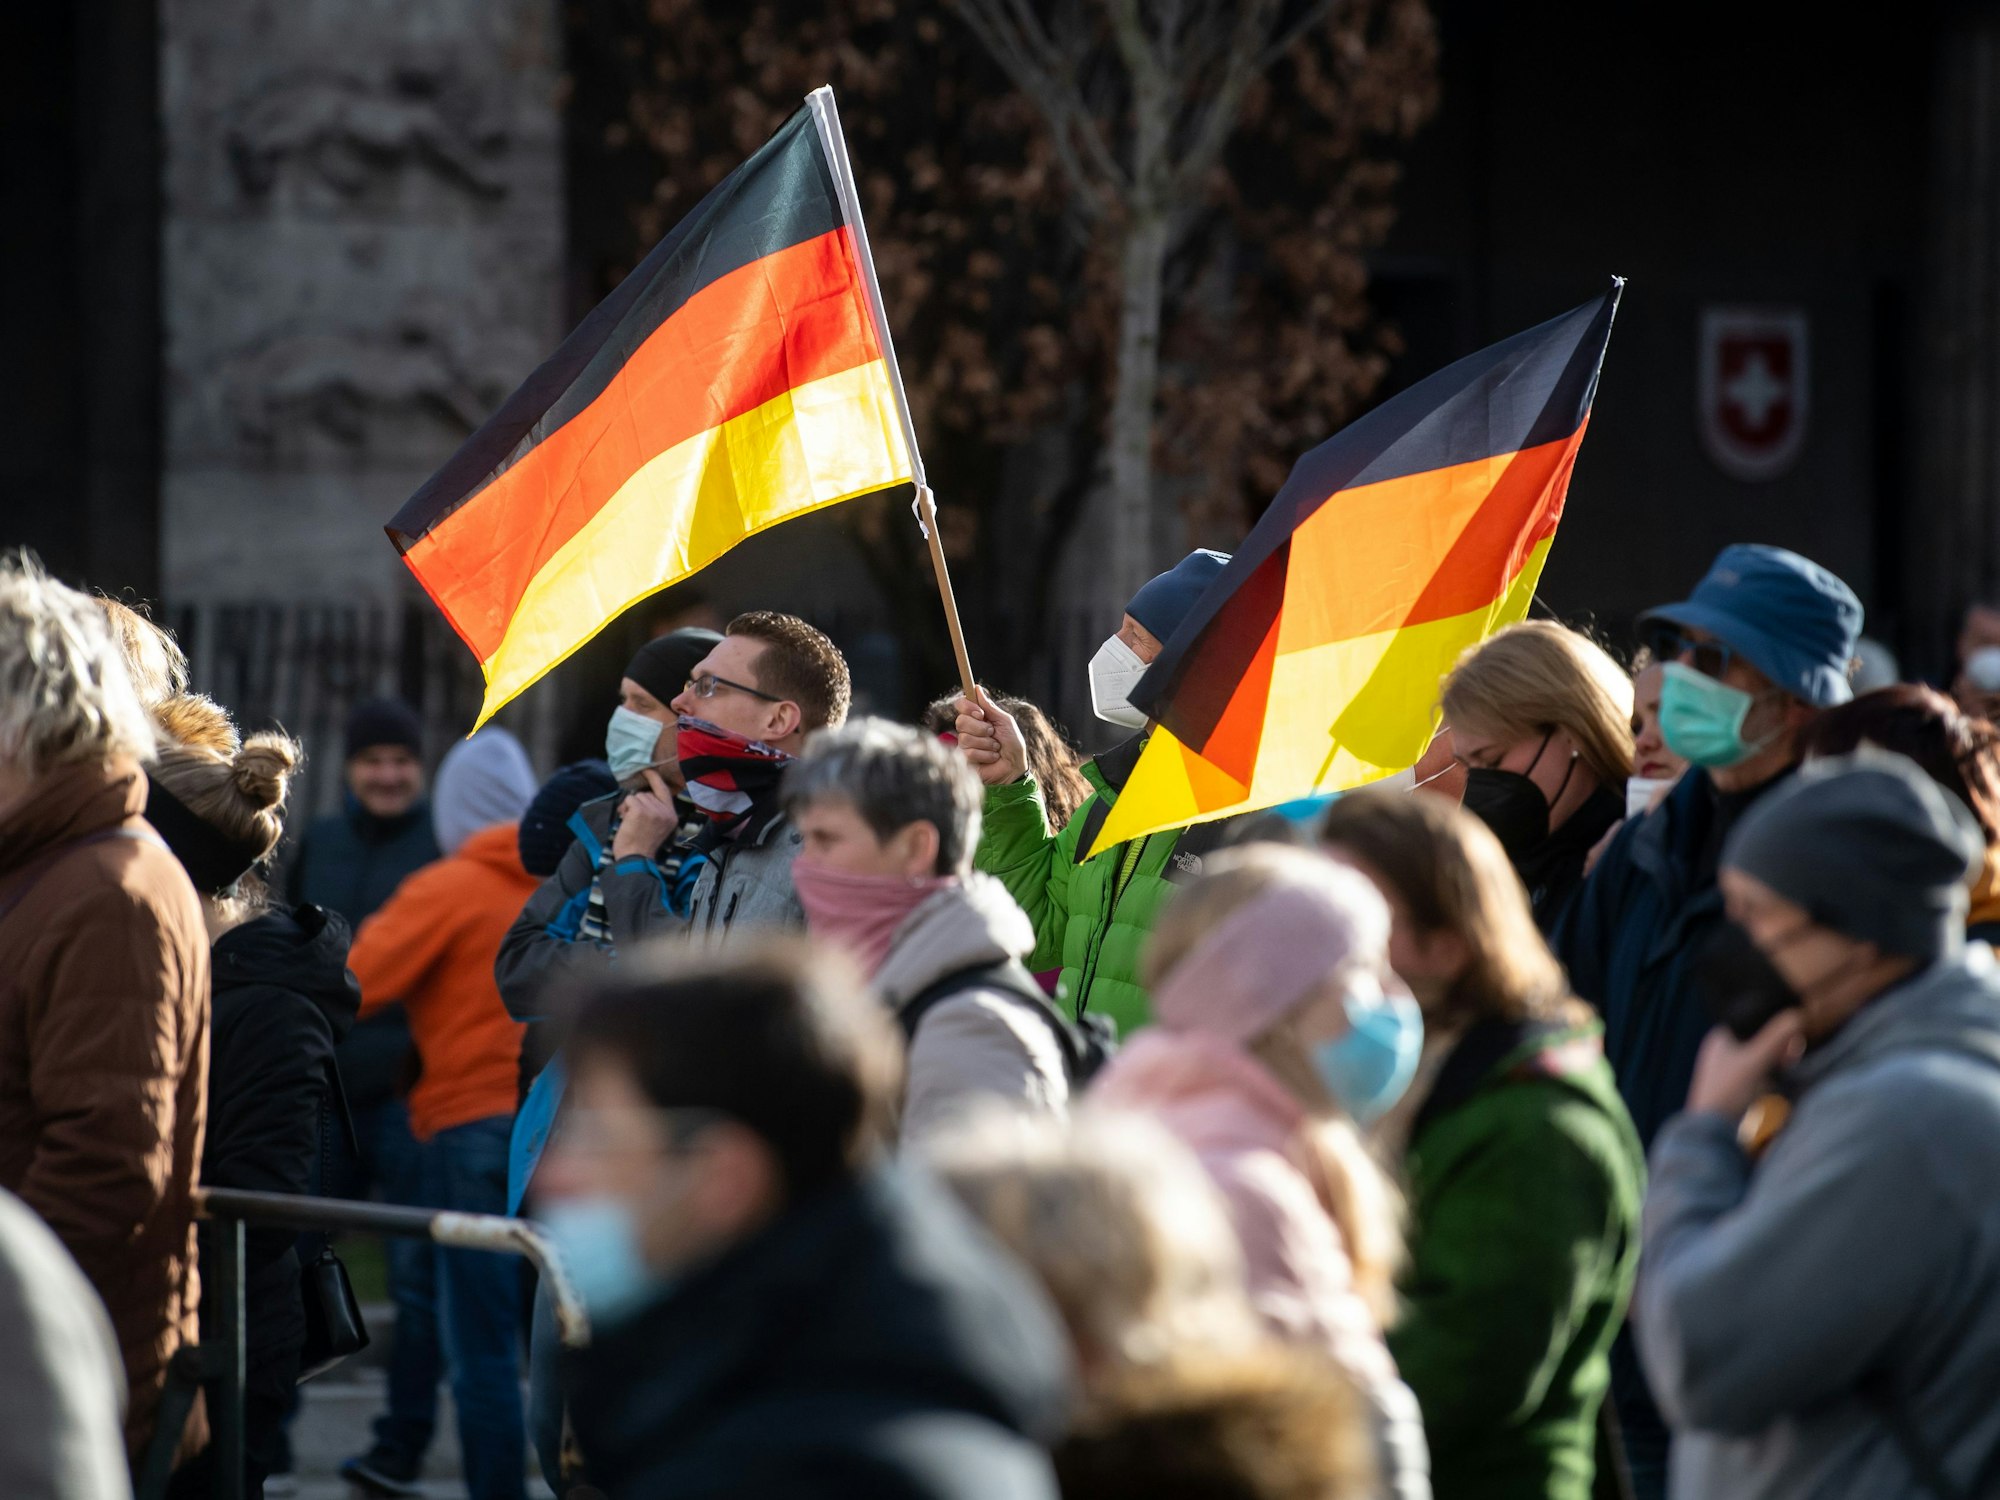 Eine Demonstration der Querdenken-Bewegung in Nürnberg im März 2021 (Archivfoto).